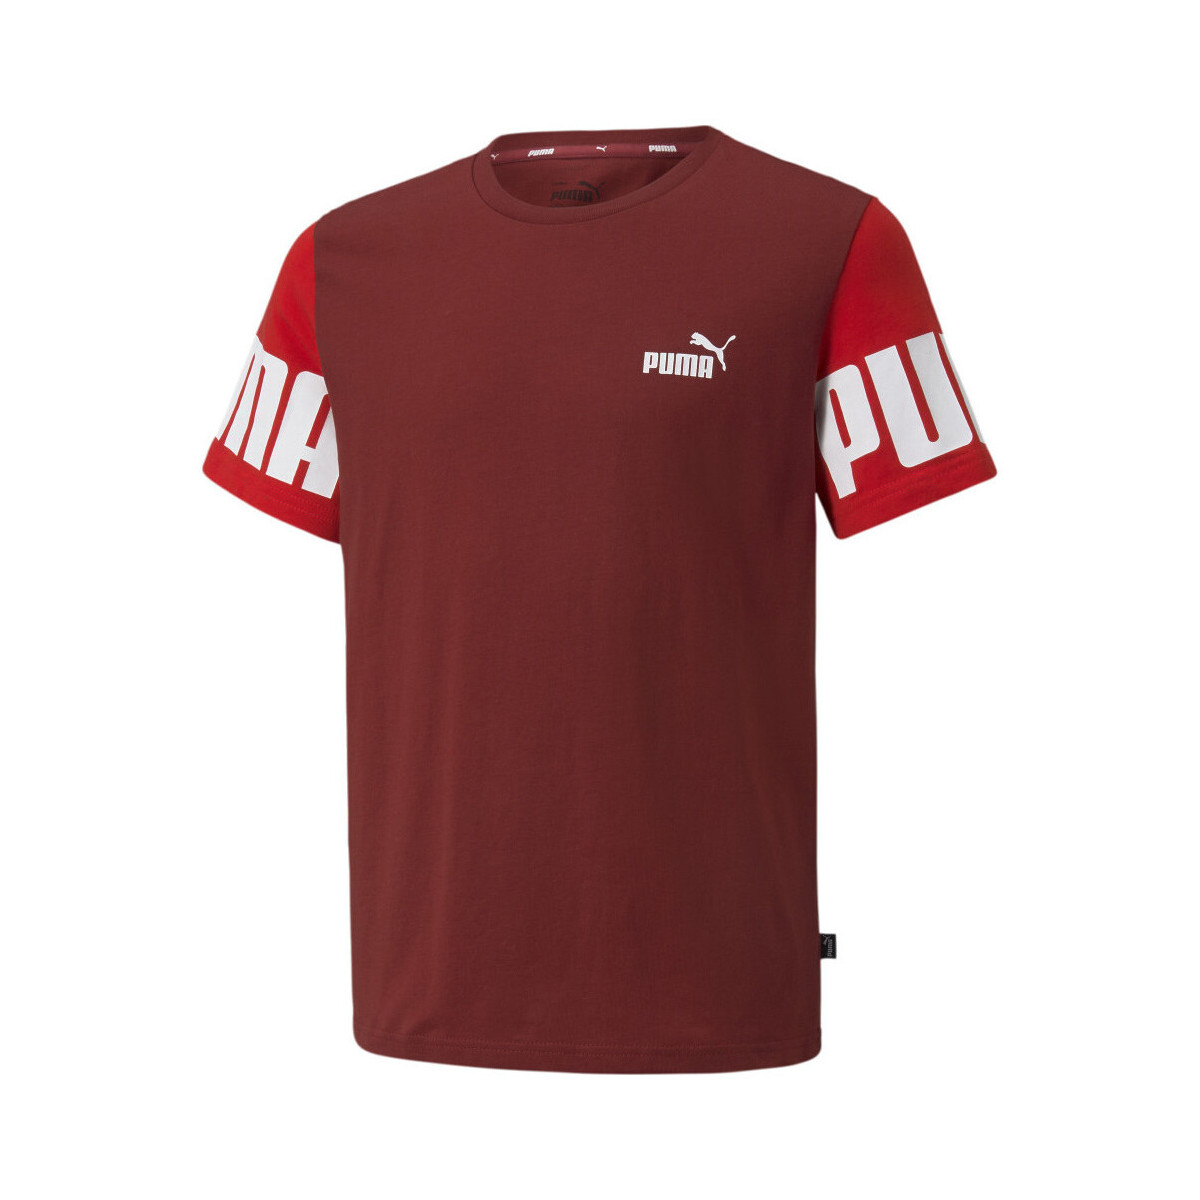 textil Niño Tops y Camisetas Puma  Rojo